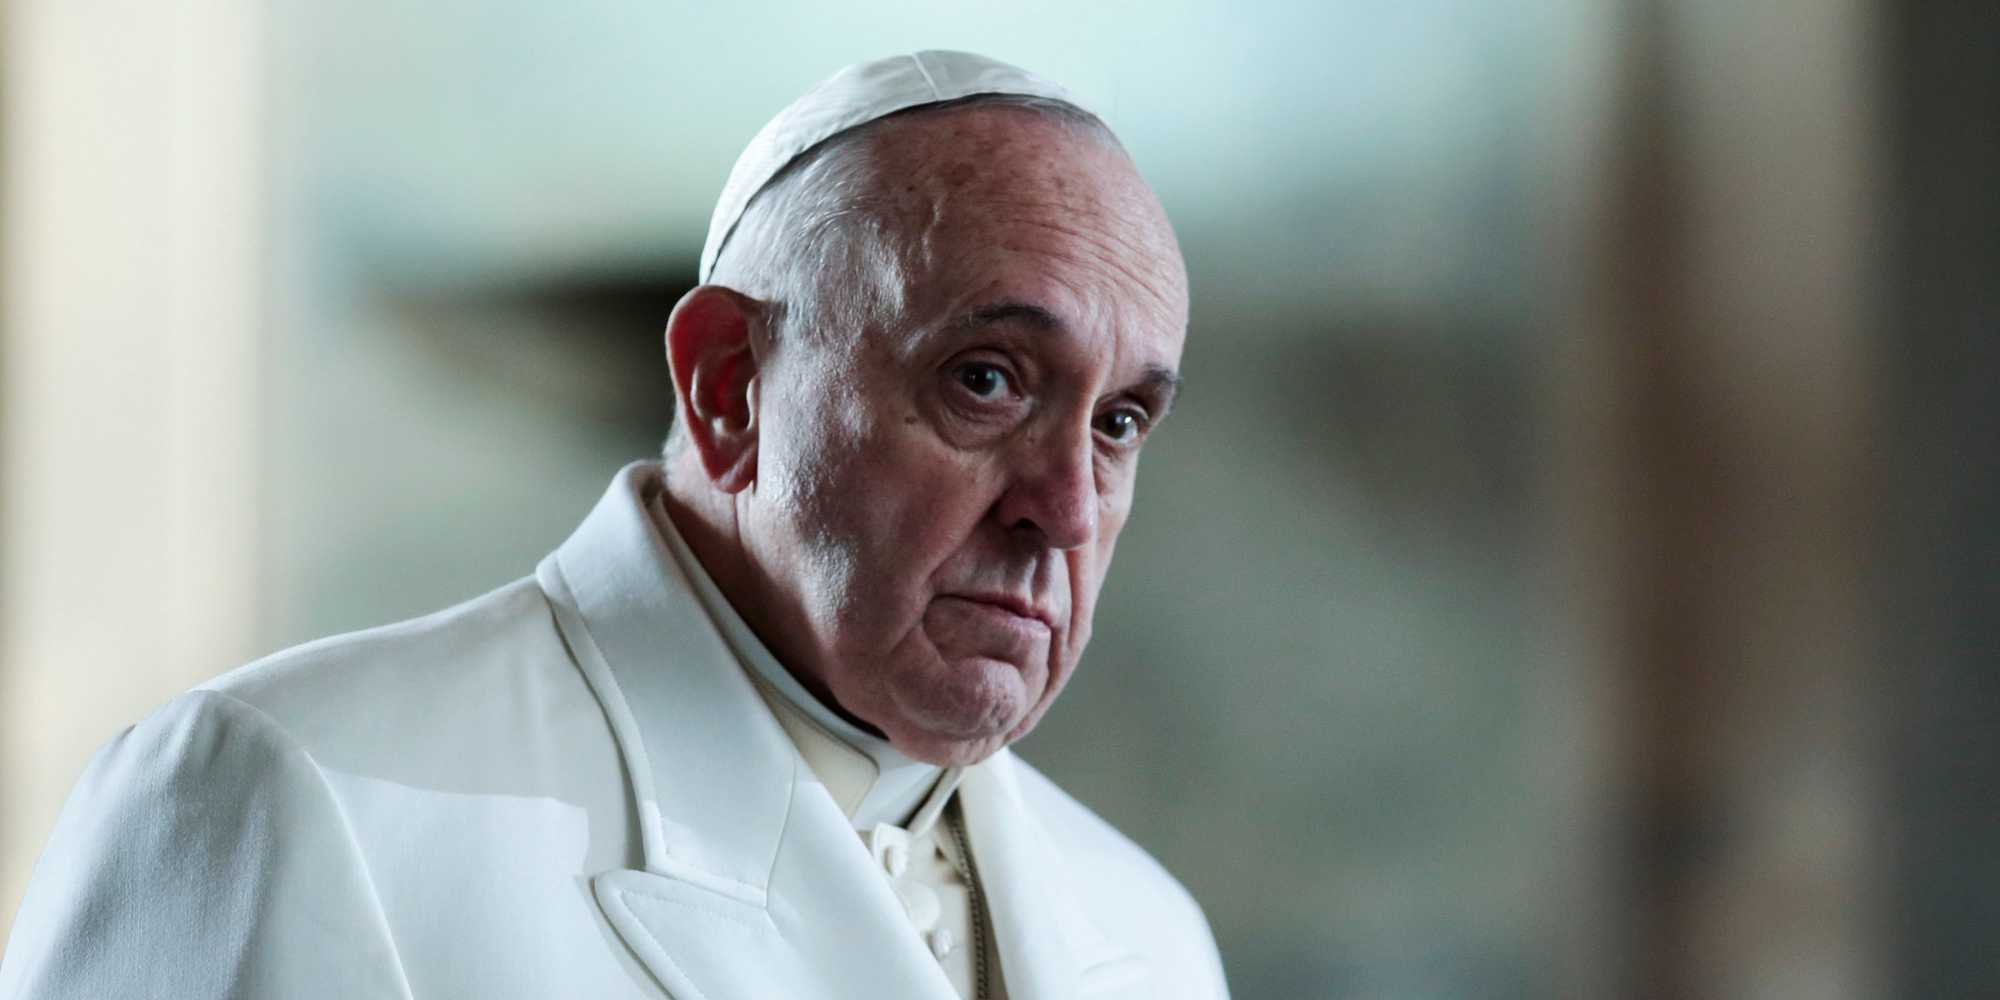 Attentato Manchester, Papa Francesco: "Addolorato per bambini e giovani che hanno perso la vita"